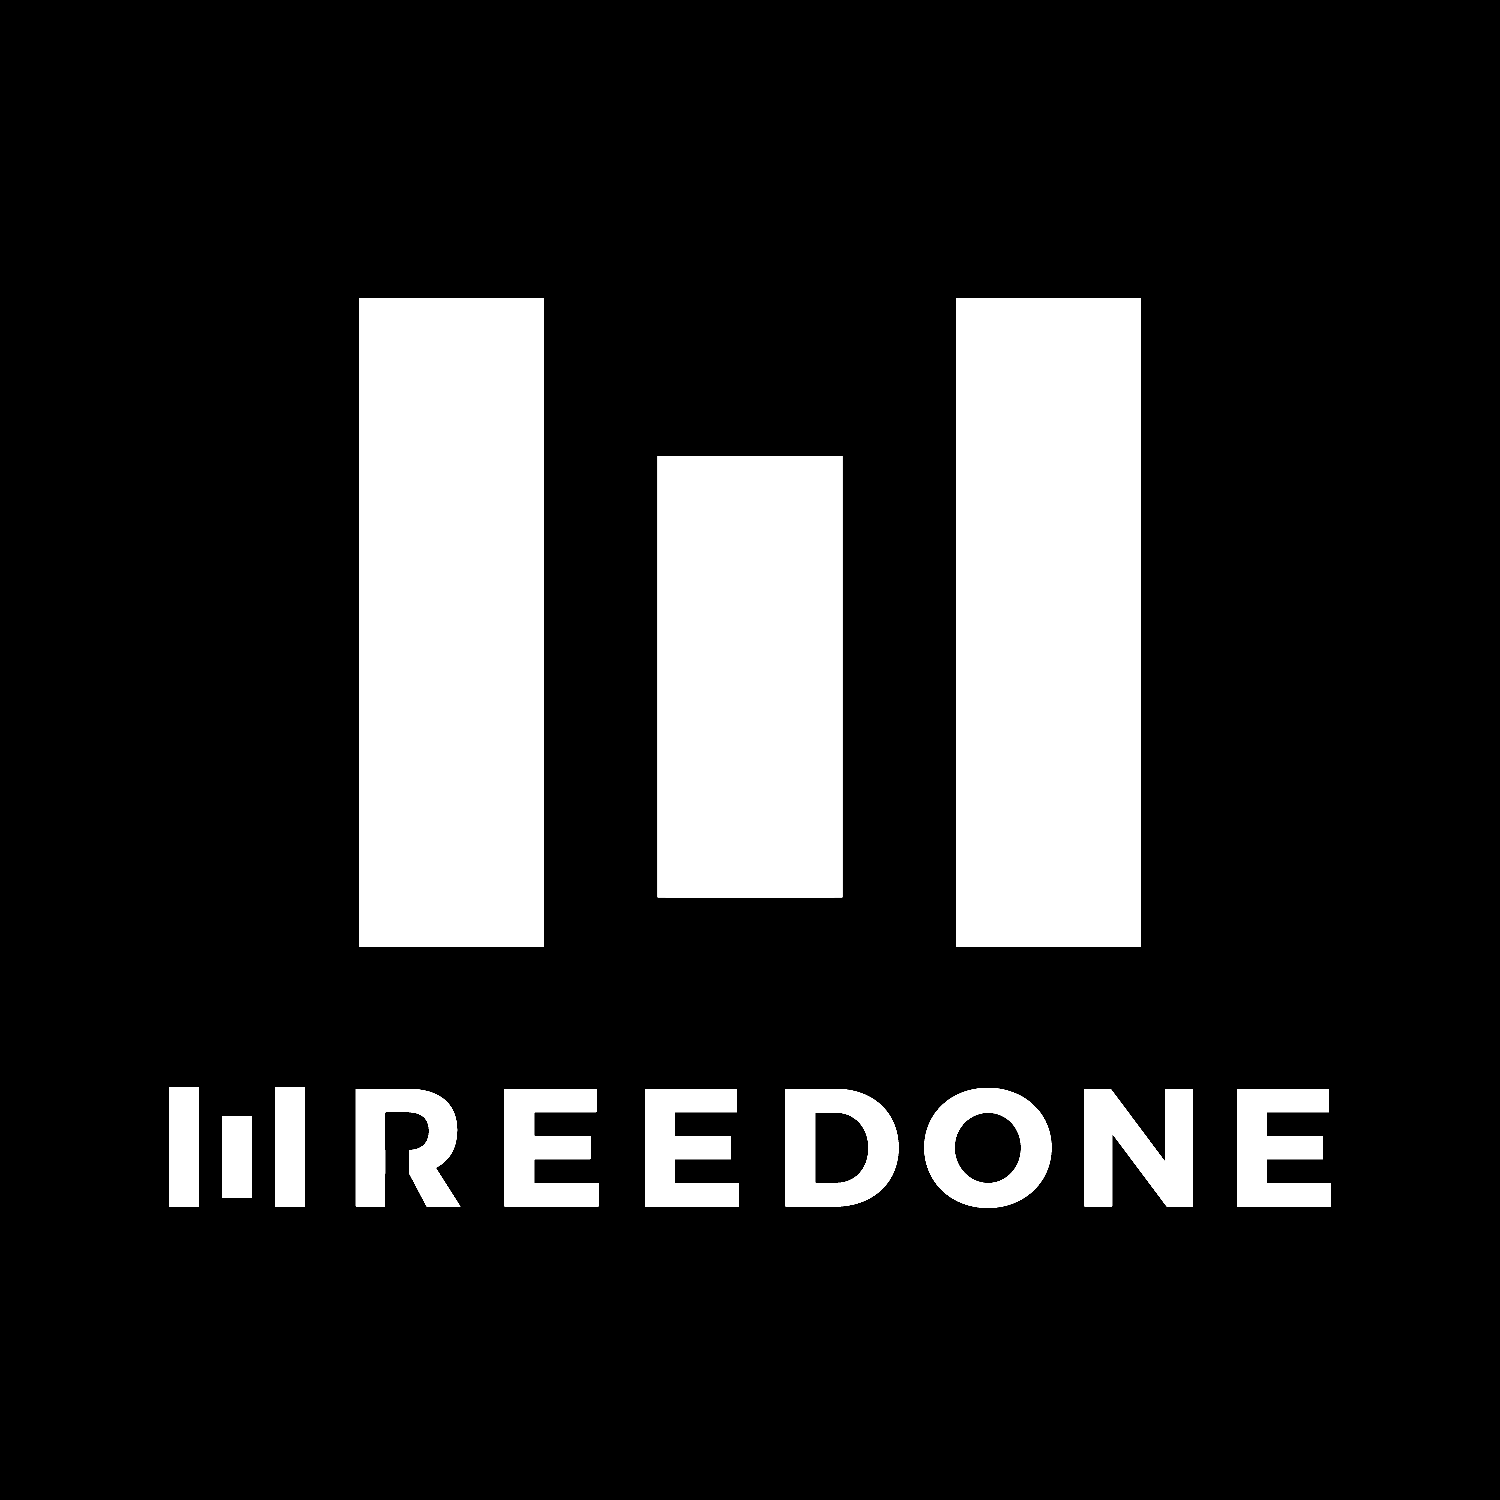 WREEDONE ("re-done") logo